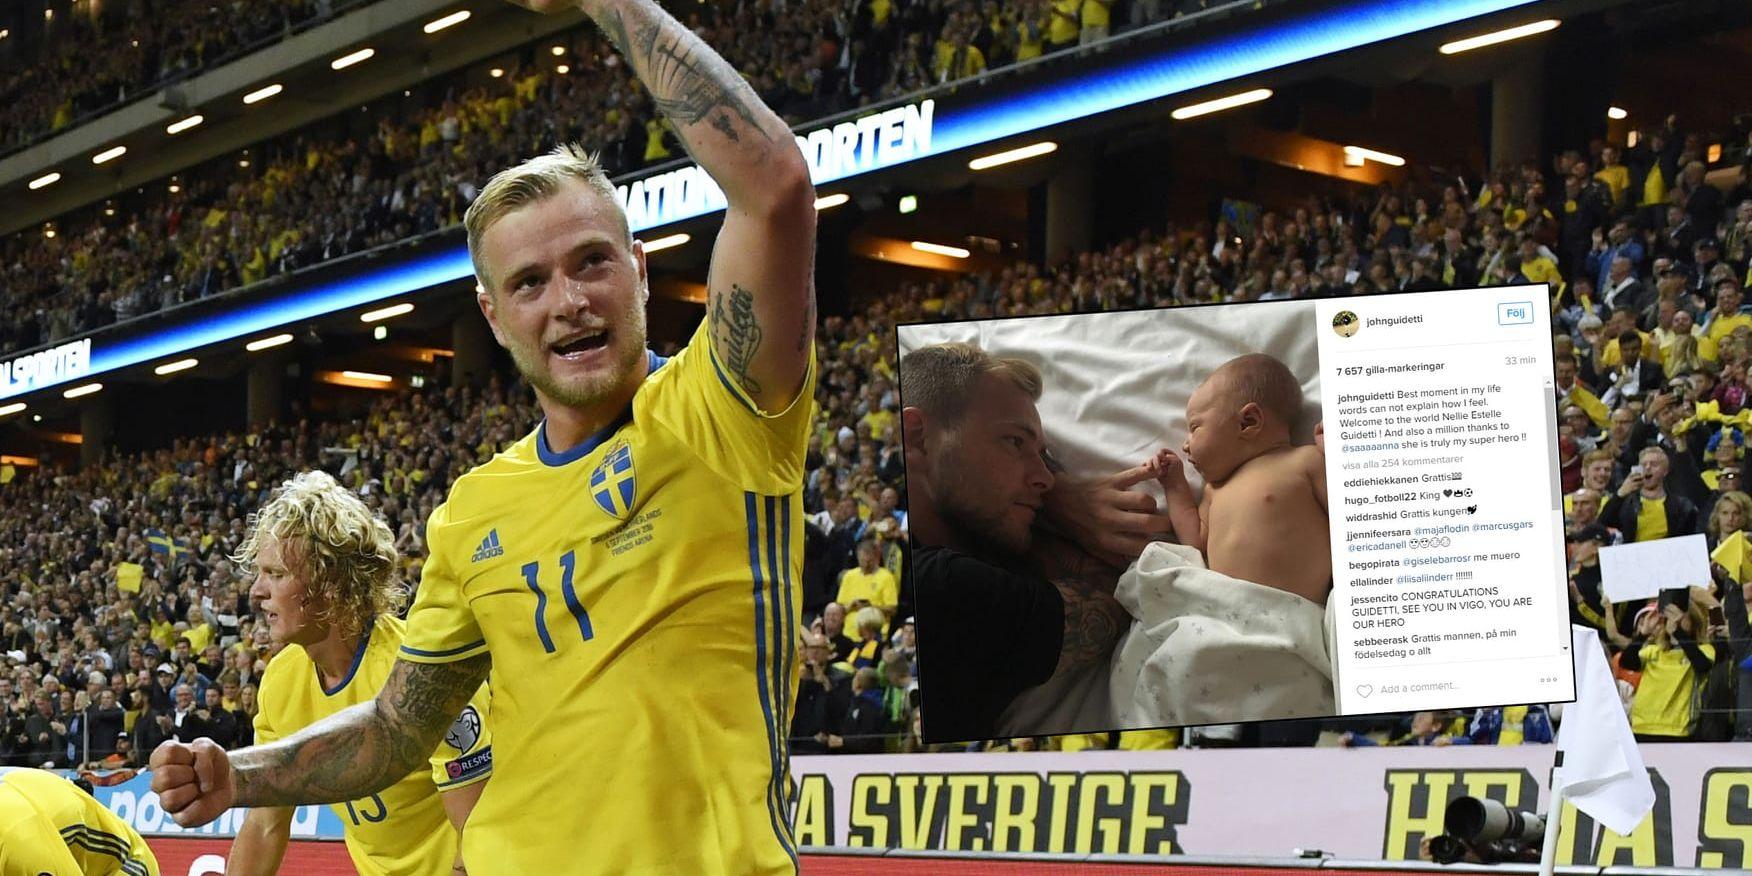 John Guidetti firade när Sveriges gjorde 1-0 i VM-kvalet mot Holland i veckan. Nu firar han också som nybliven pappa. Bild: Pontus Lundahl, TT / Instagram